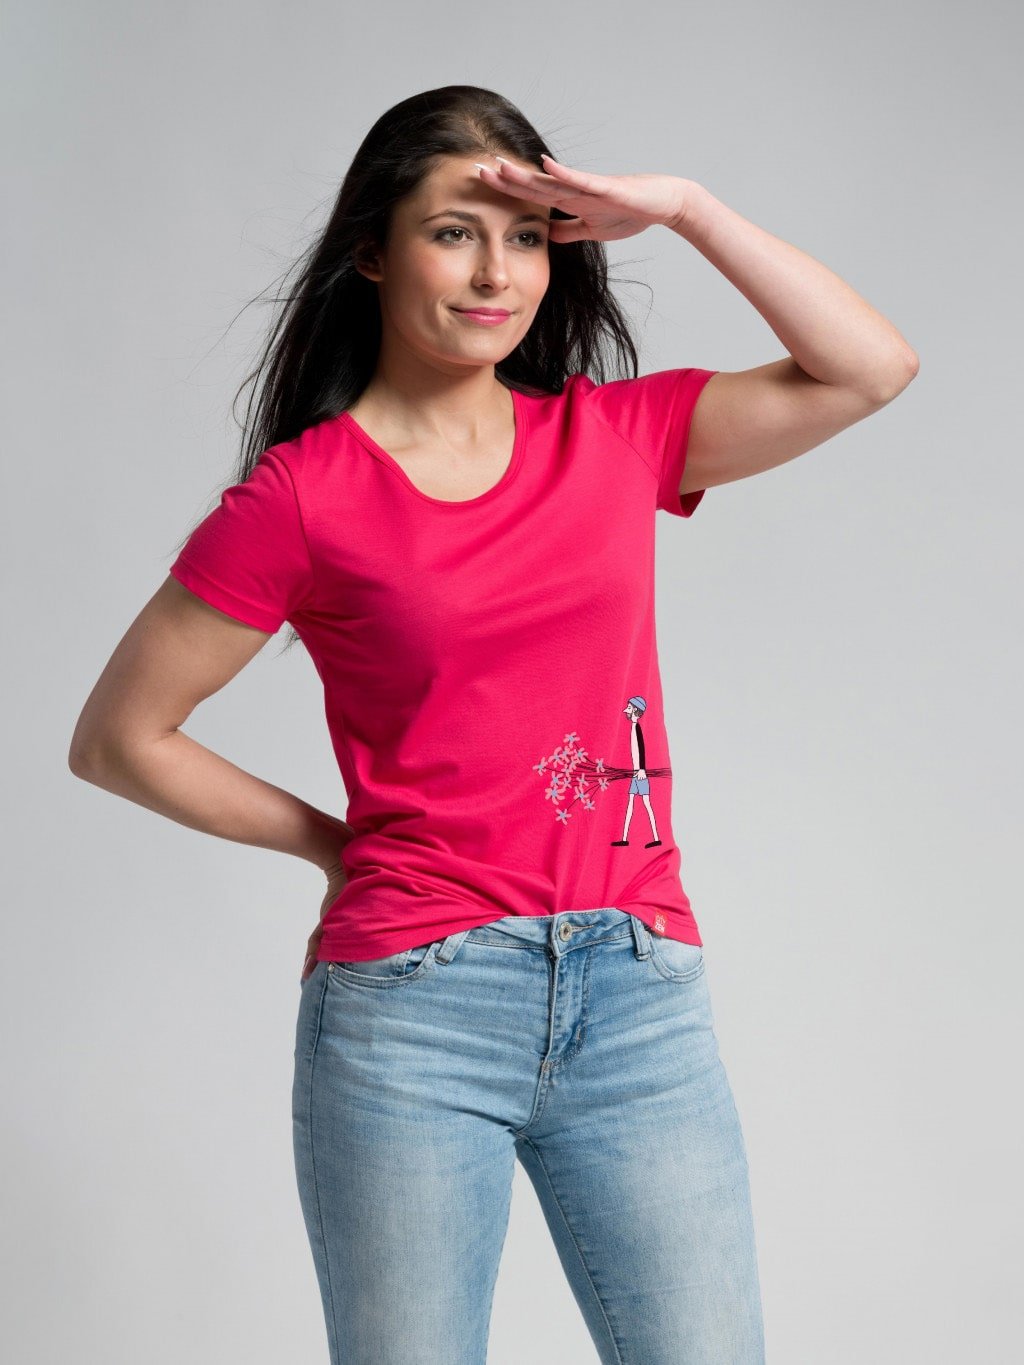 Dámske tričko BREDA malinové s potlačou od E. Podzimkové (Veľkosť XXL/44)